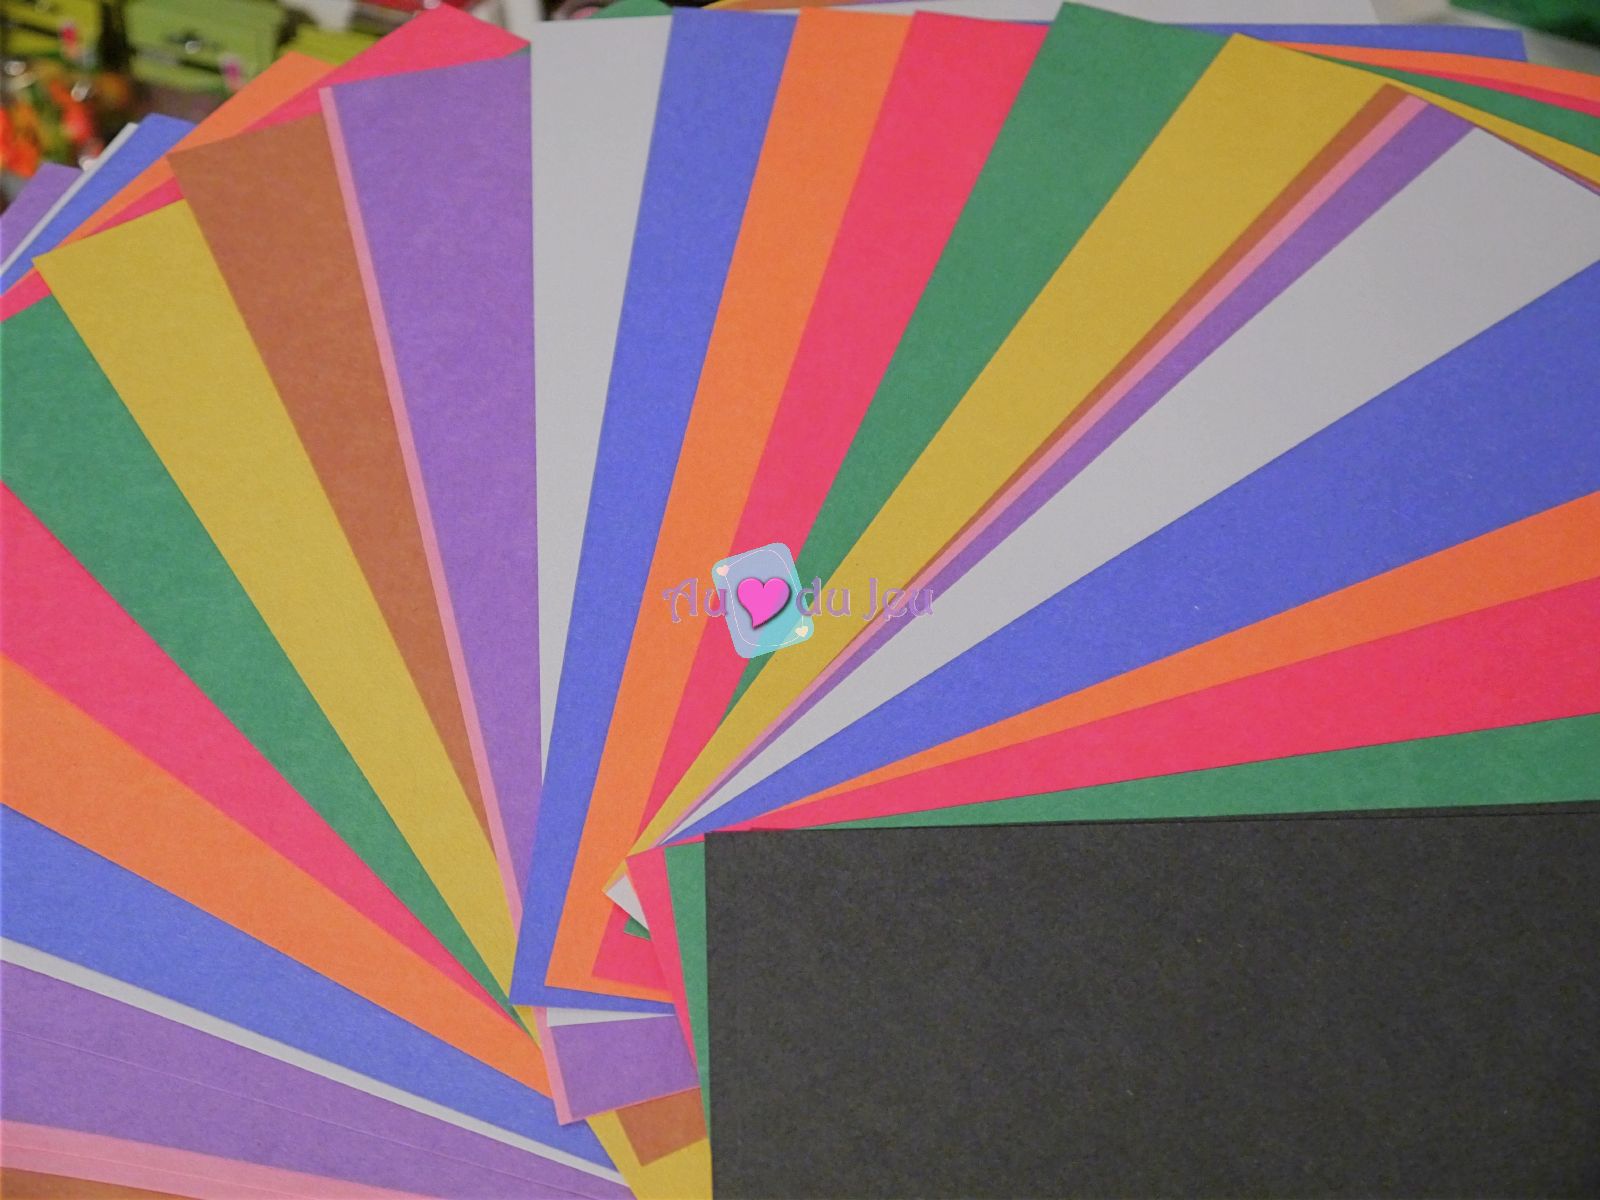 Papier multicolore pour travaux manuels